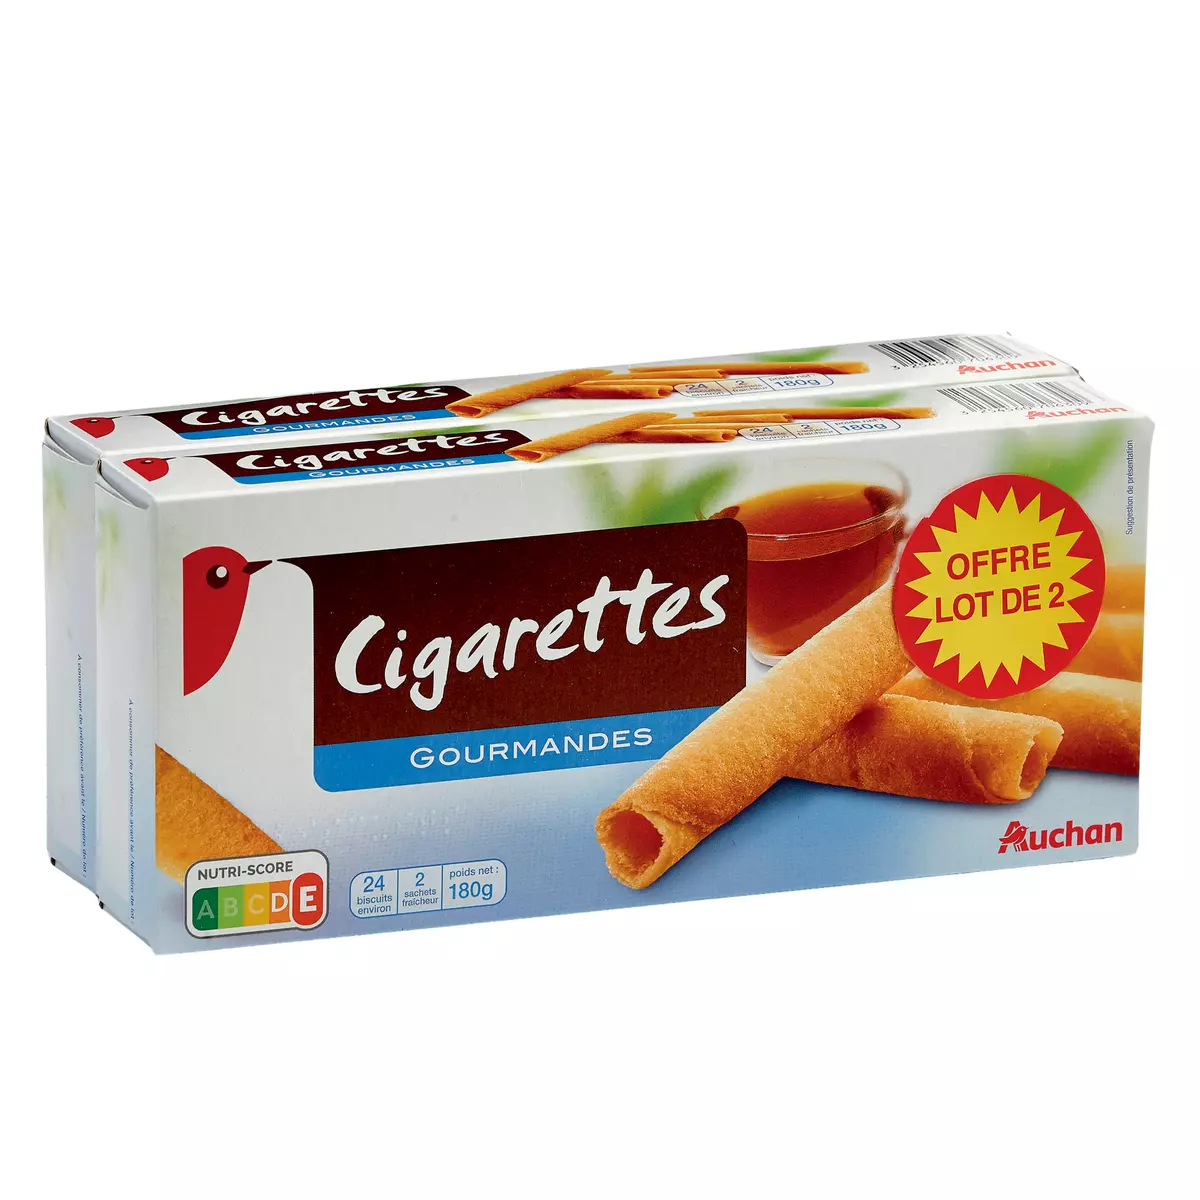 AUCHAN Cigarettes gourmandes 2 paquets 180g pas cher 